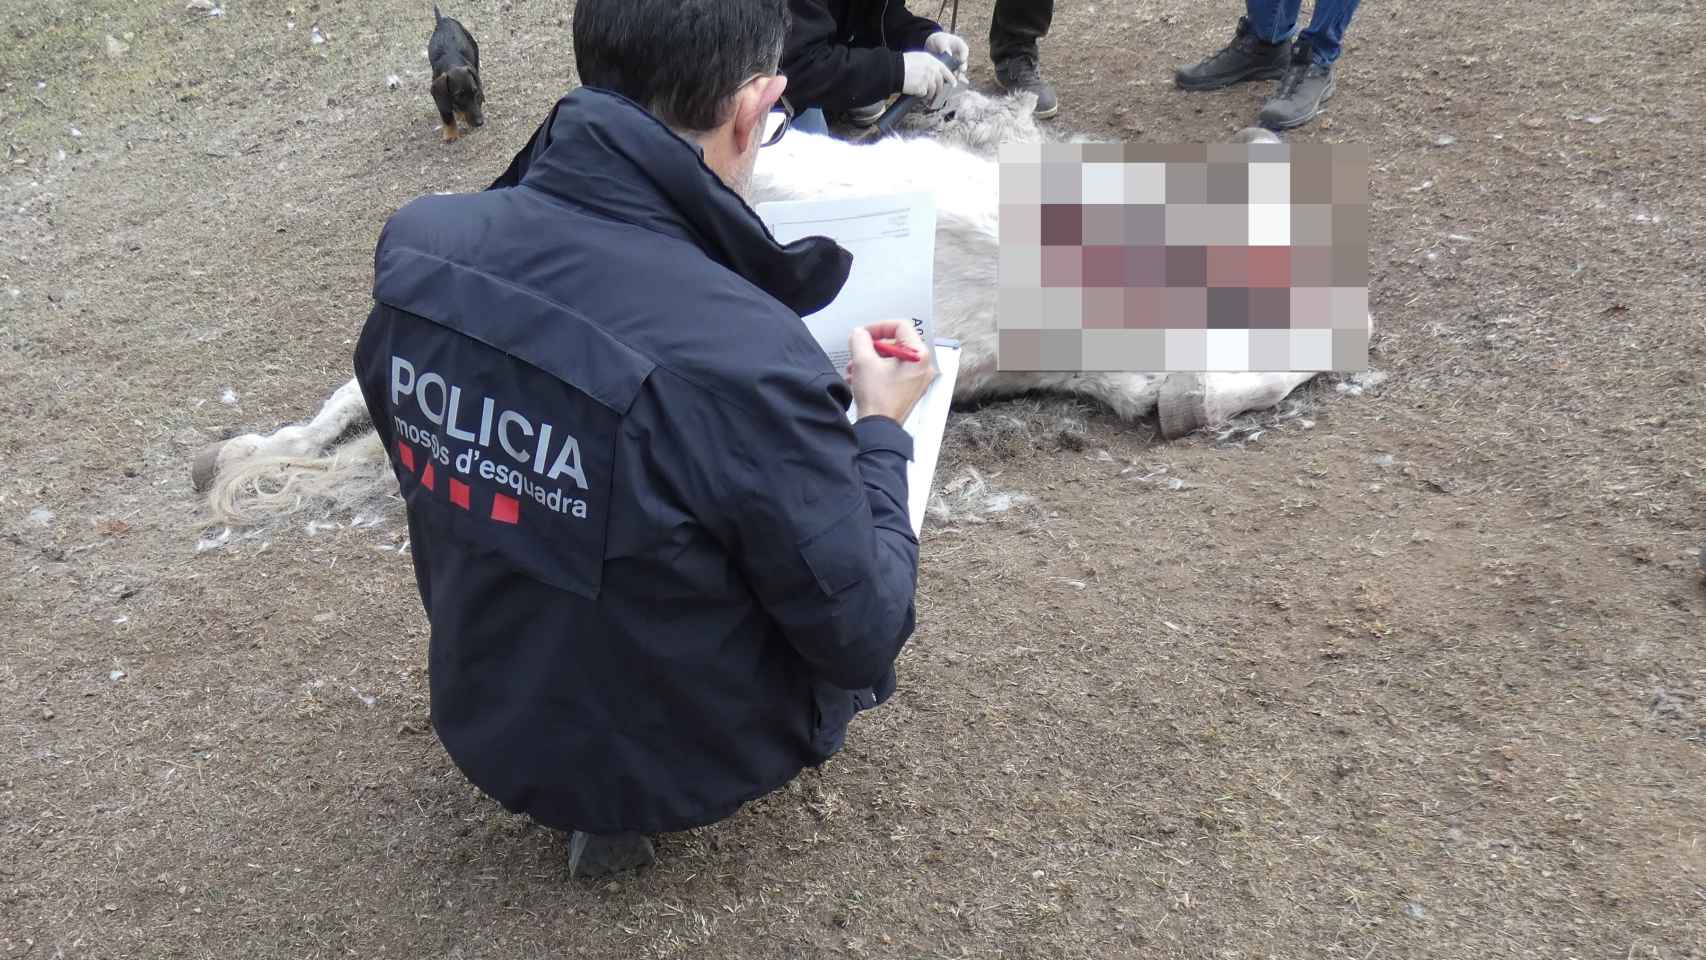 Caballo encontrado muerto en una hípica en el Ripollès (Girona)